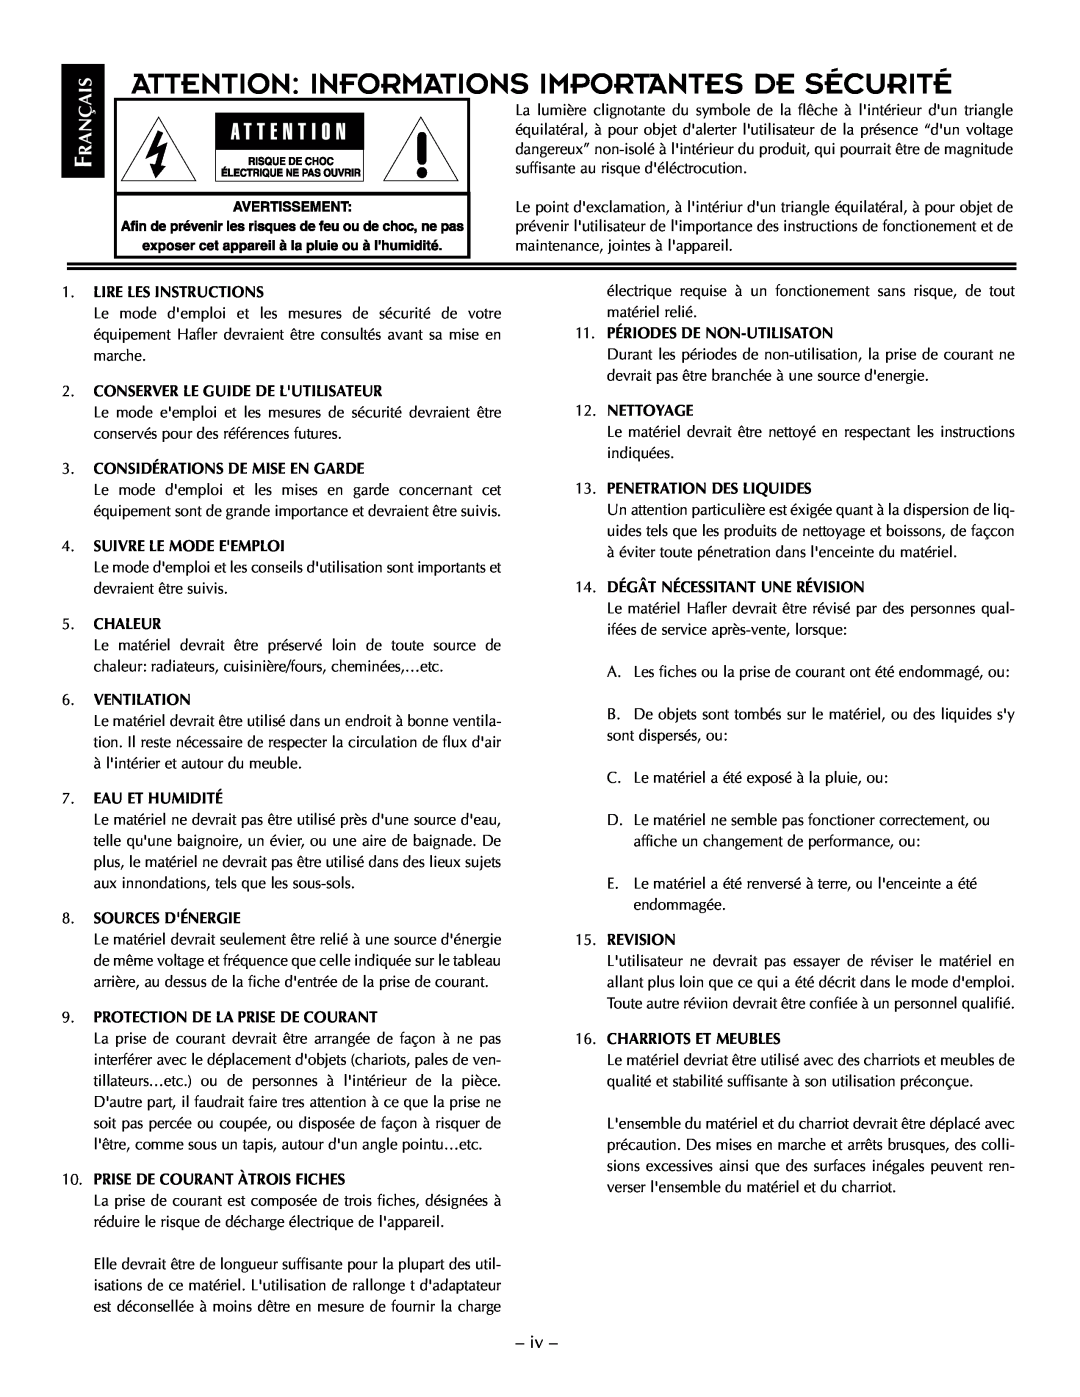 Hafler TRM6.1CE manual Attention Informations Importantes De Sécurité, Rançais 